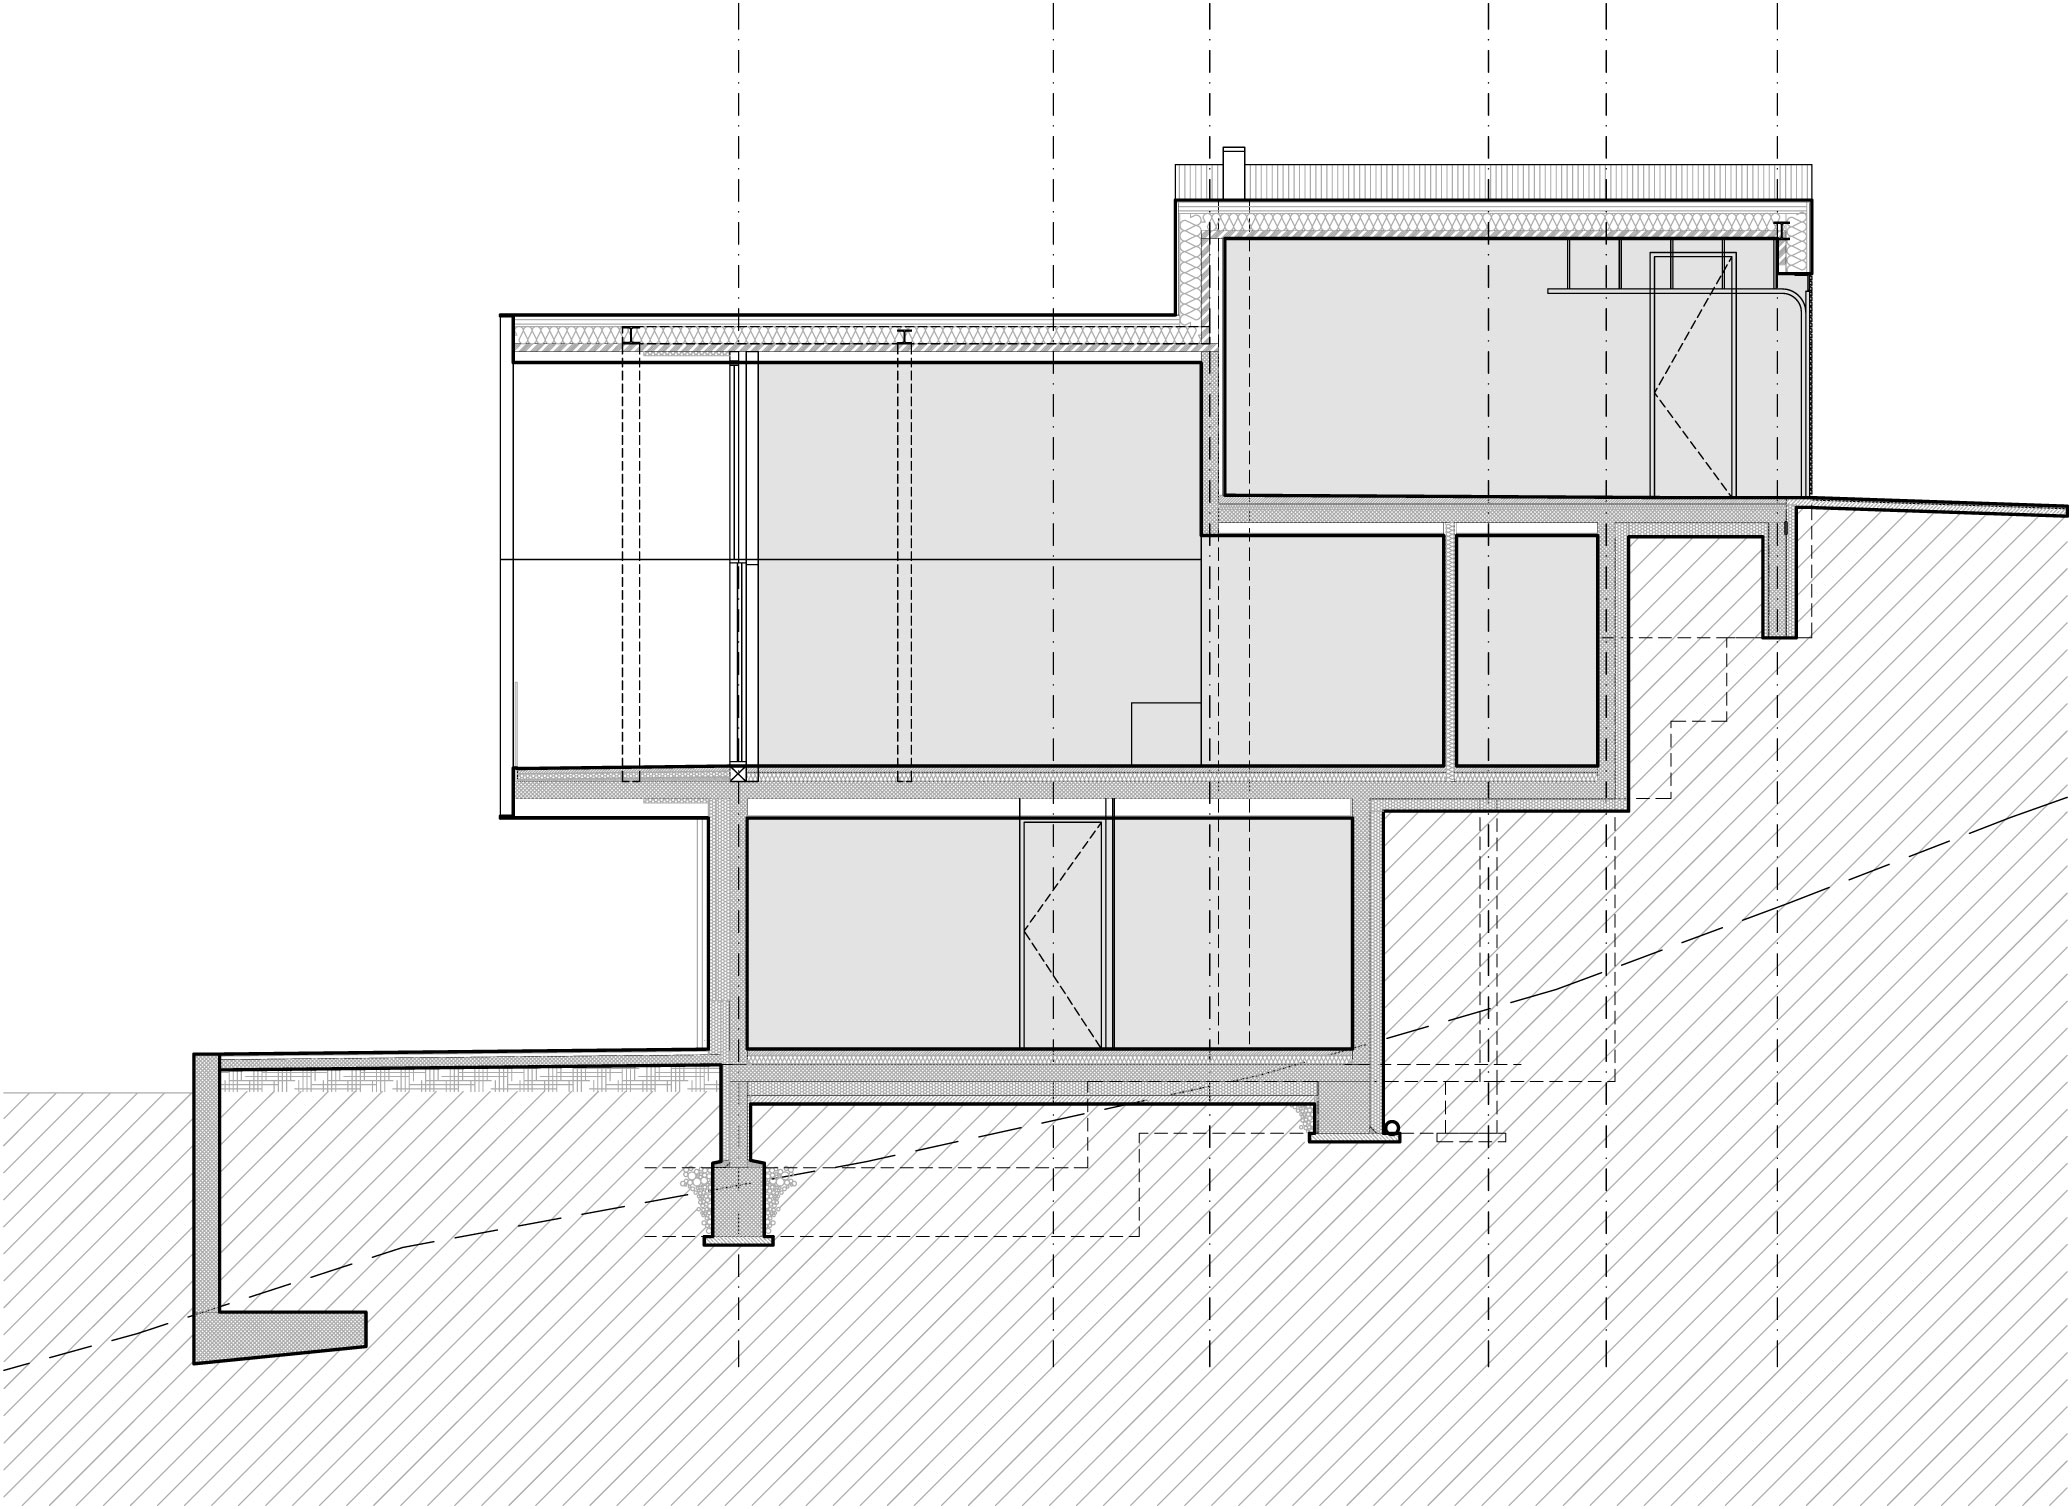 Kitzbuehel Mountain View House by SoNo arhitekti-18